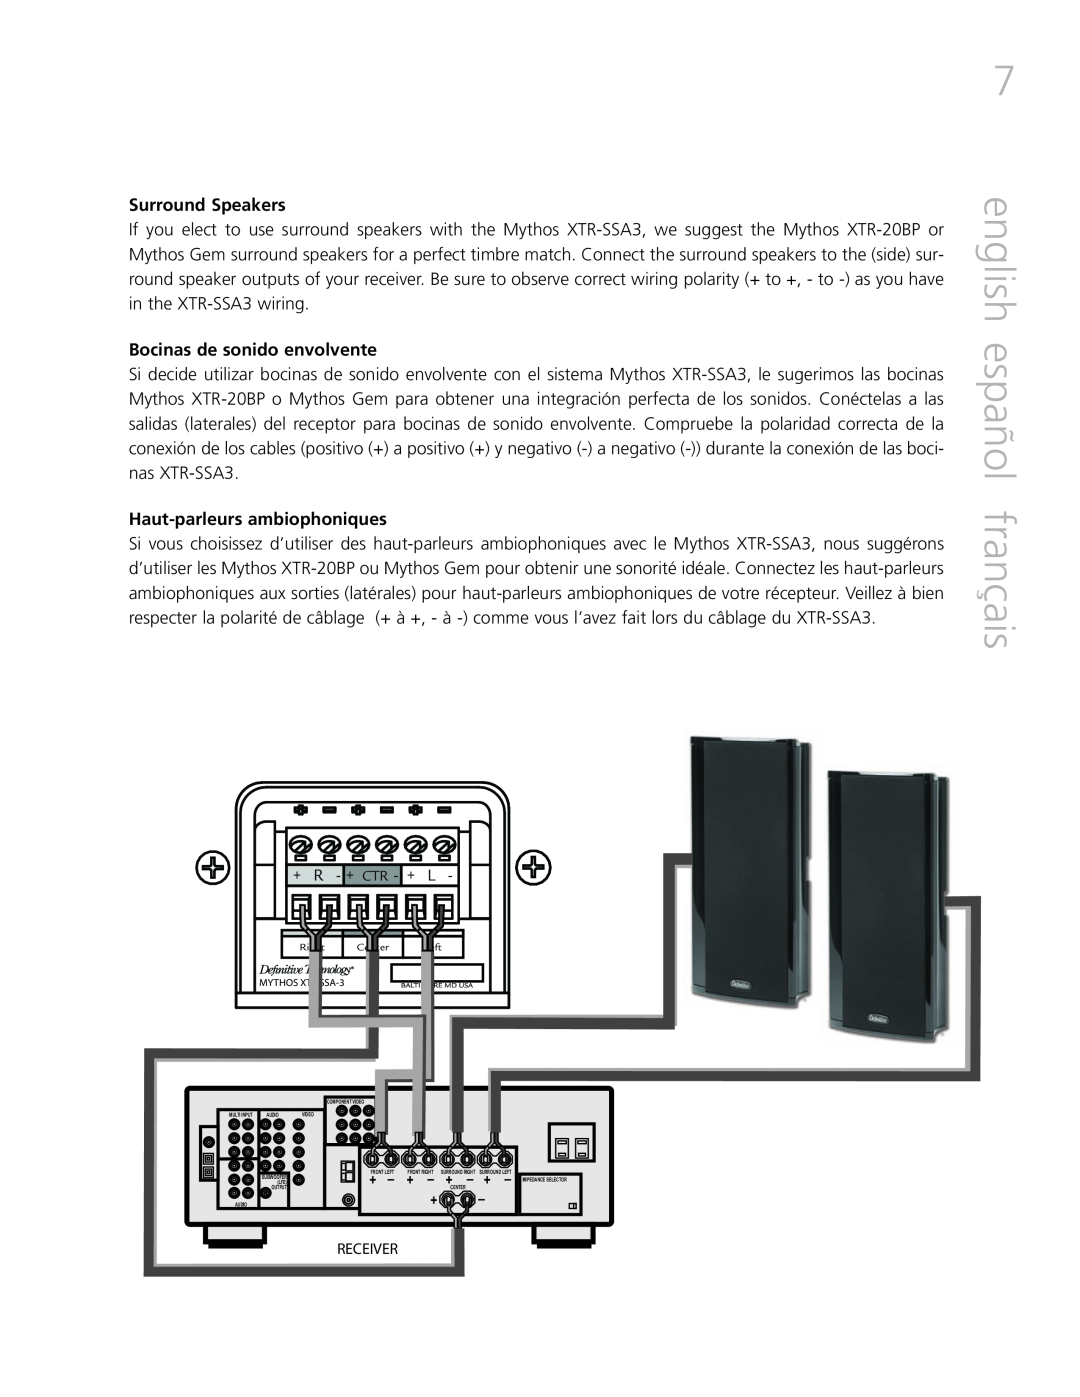 Definitive Technology XTR-SSA3 owner manual english español français, Surround Speakers, Bocinas de sonido envolvente 